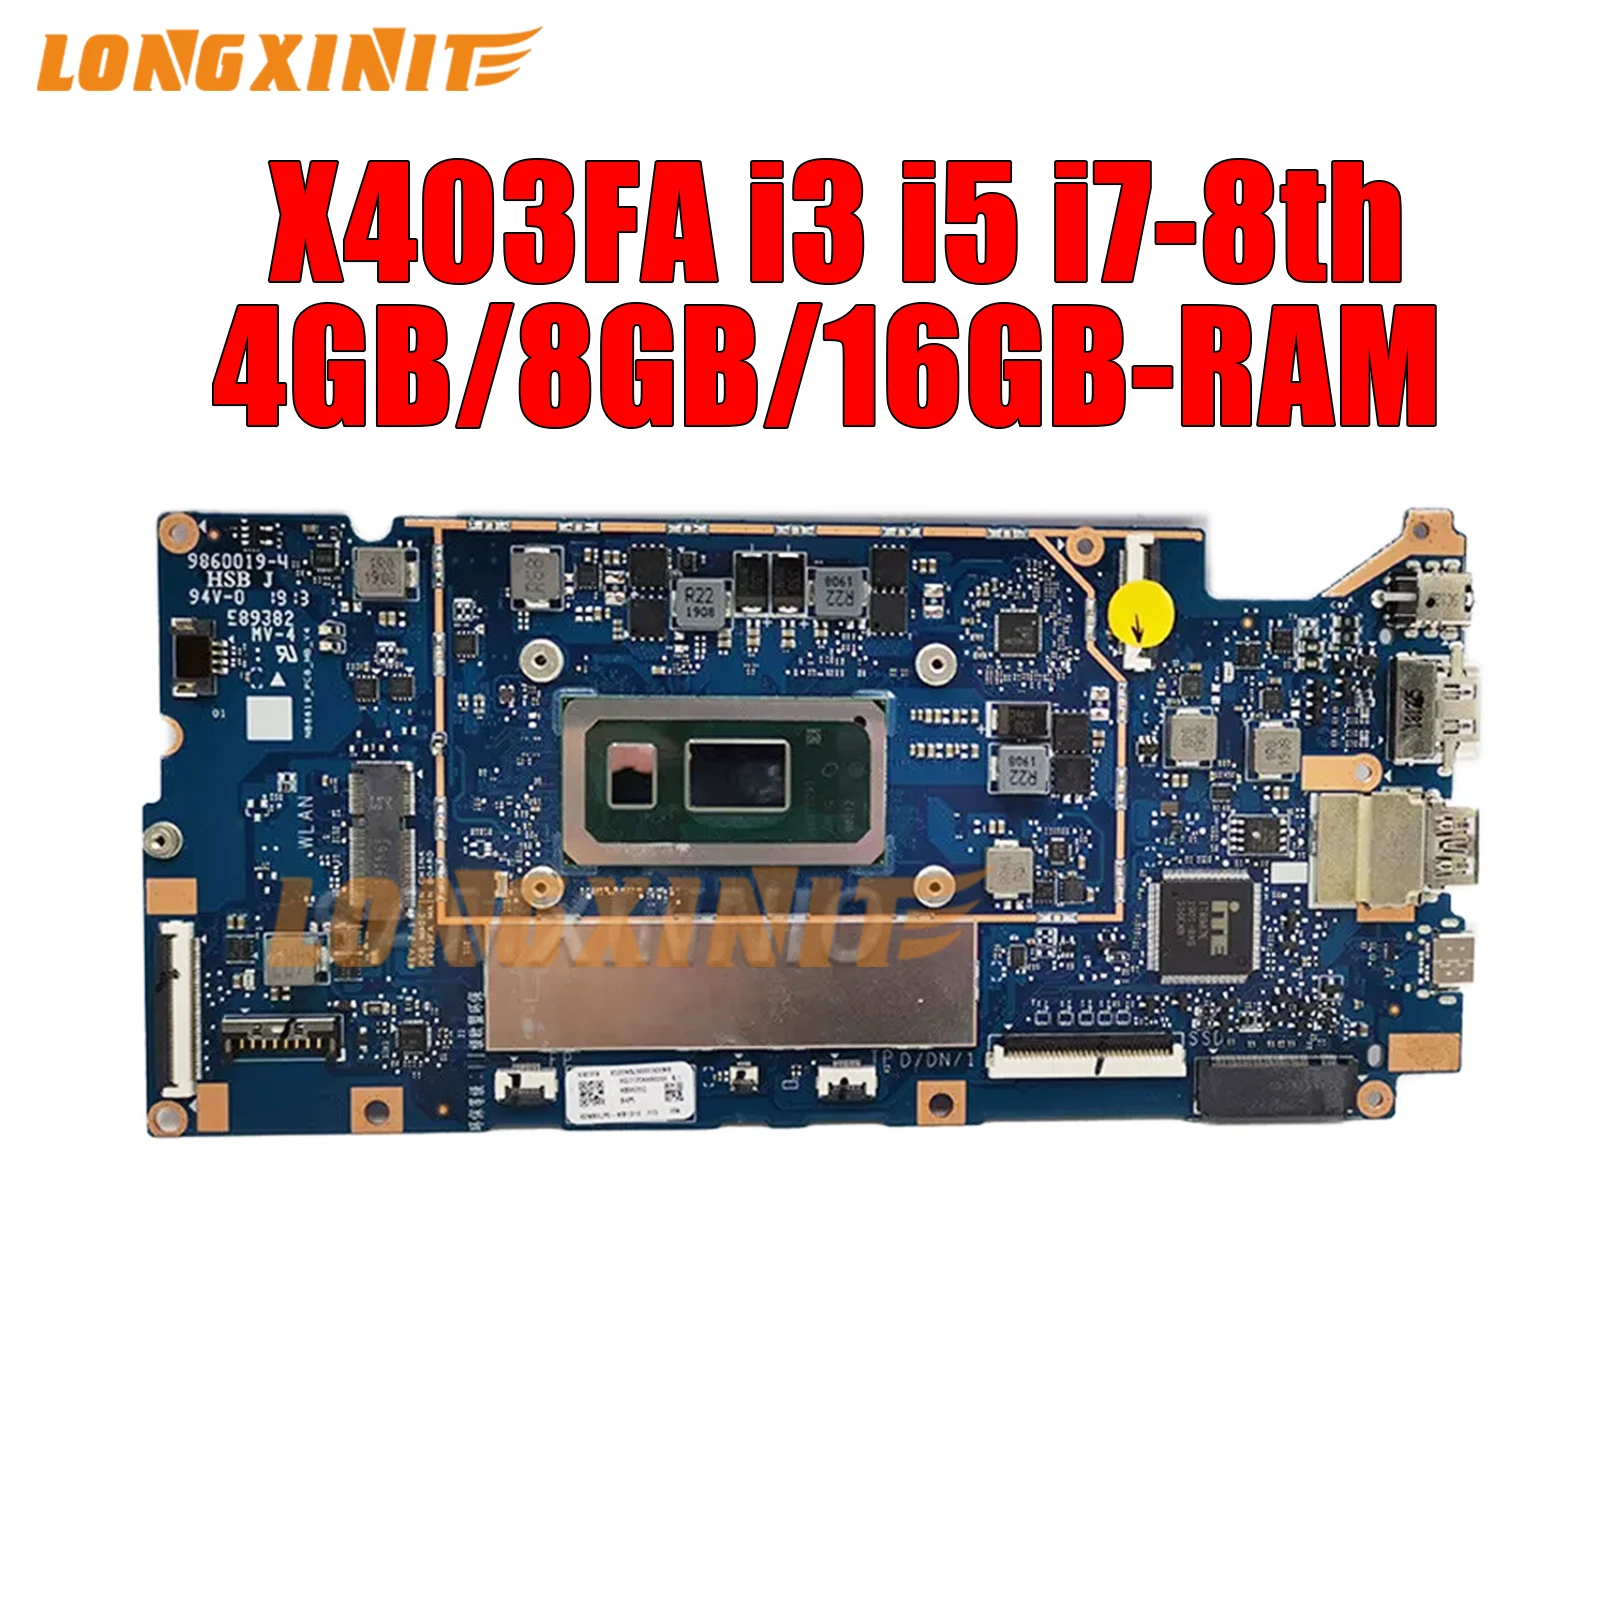 

X403FA motherboard For ASUS VivoBook X403F X403 L403FA L403FAC X403FAC Laptop Motherboard.i3 i5 i7-8Th.4GB/8GB/16GB-RAM.